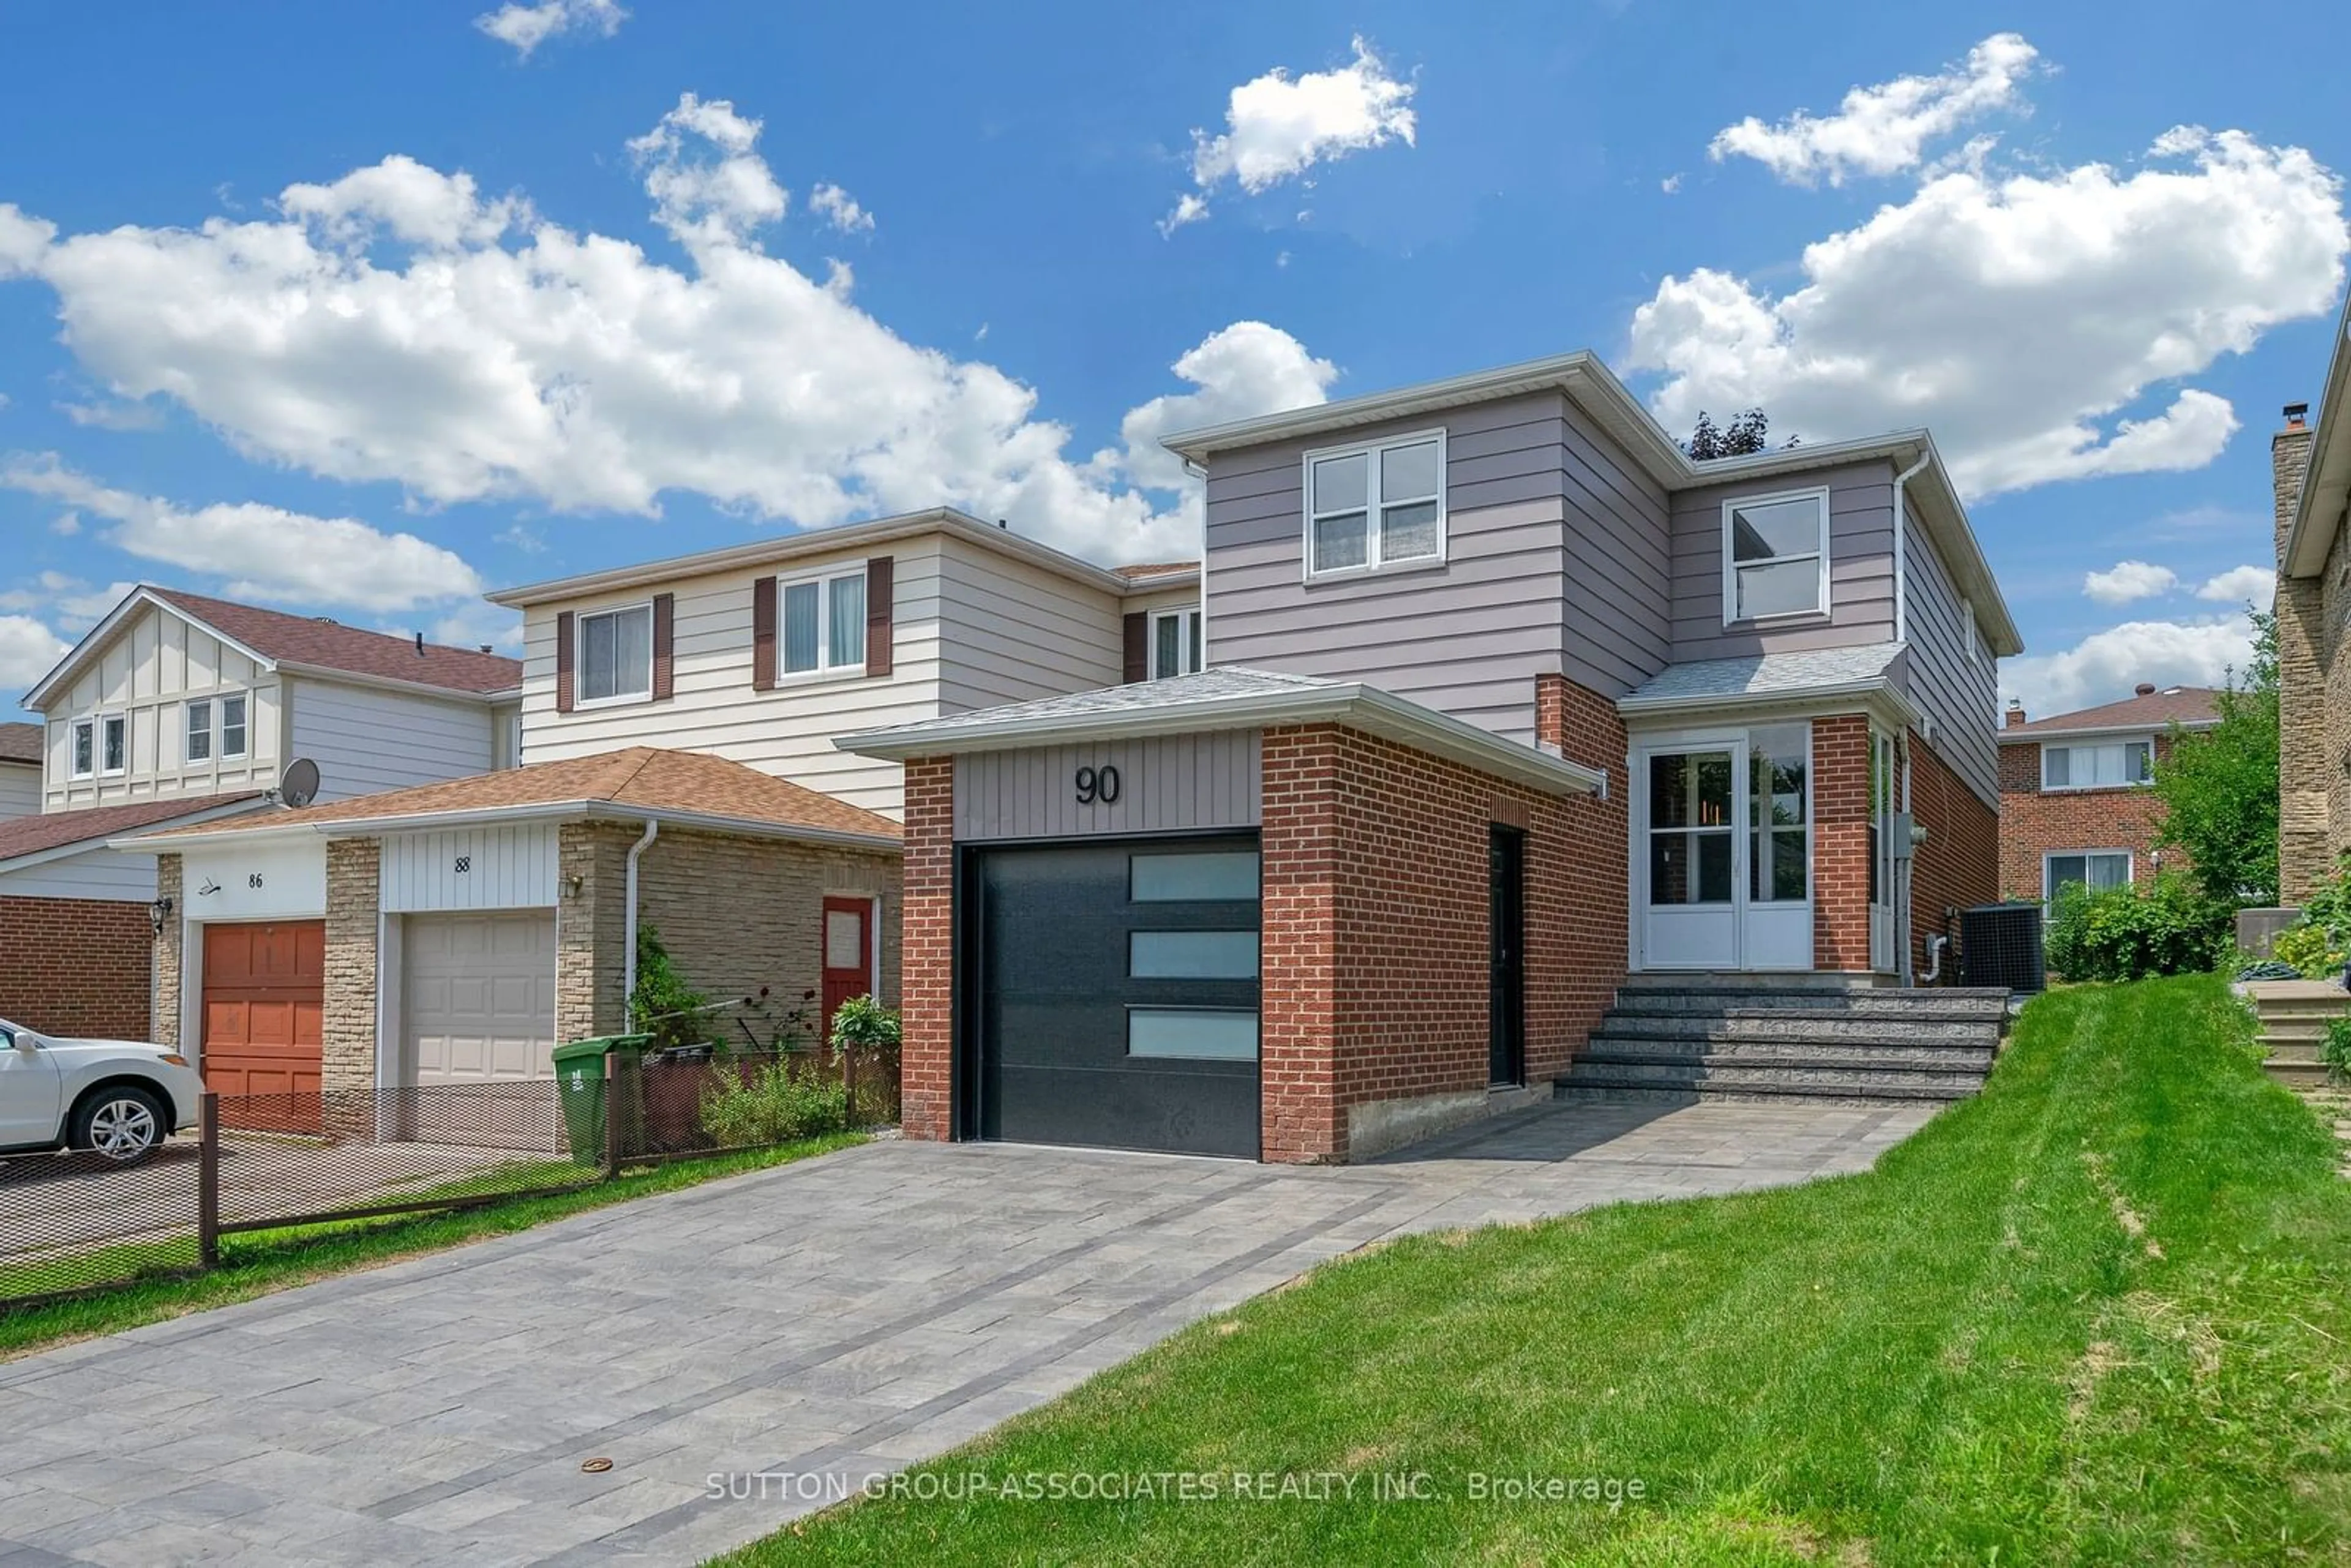 Home with brick exterior material for 90 Rooksnest Tr, Toronto Ontario M1S 3W3